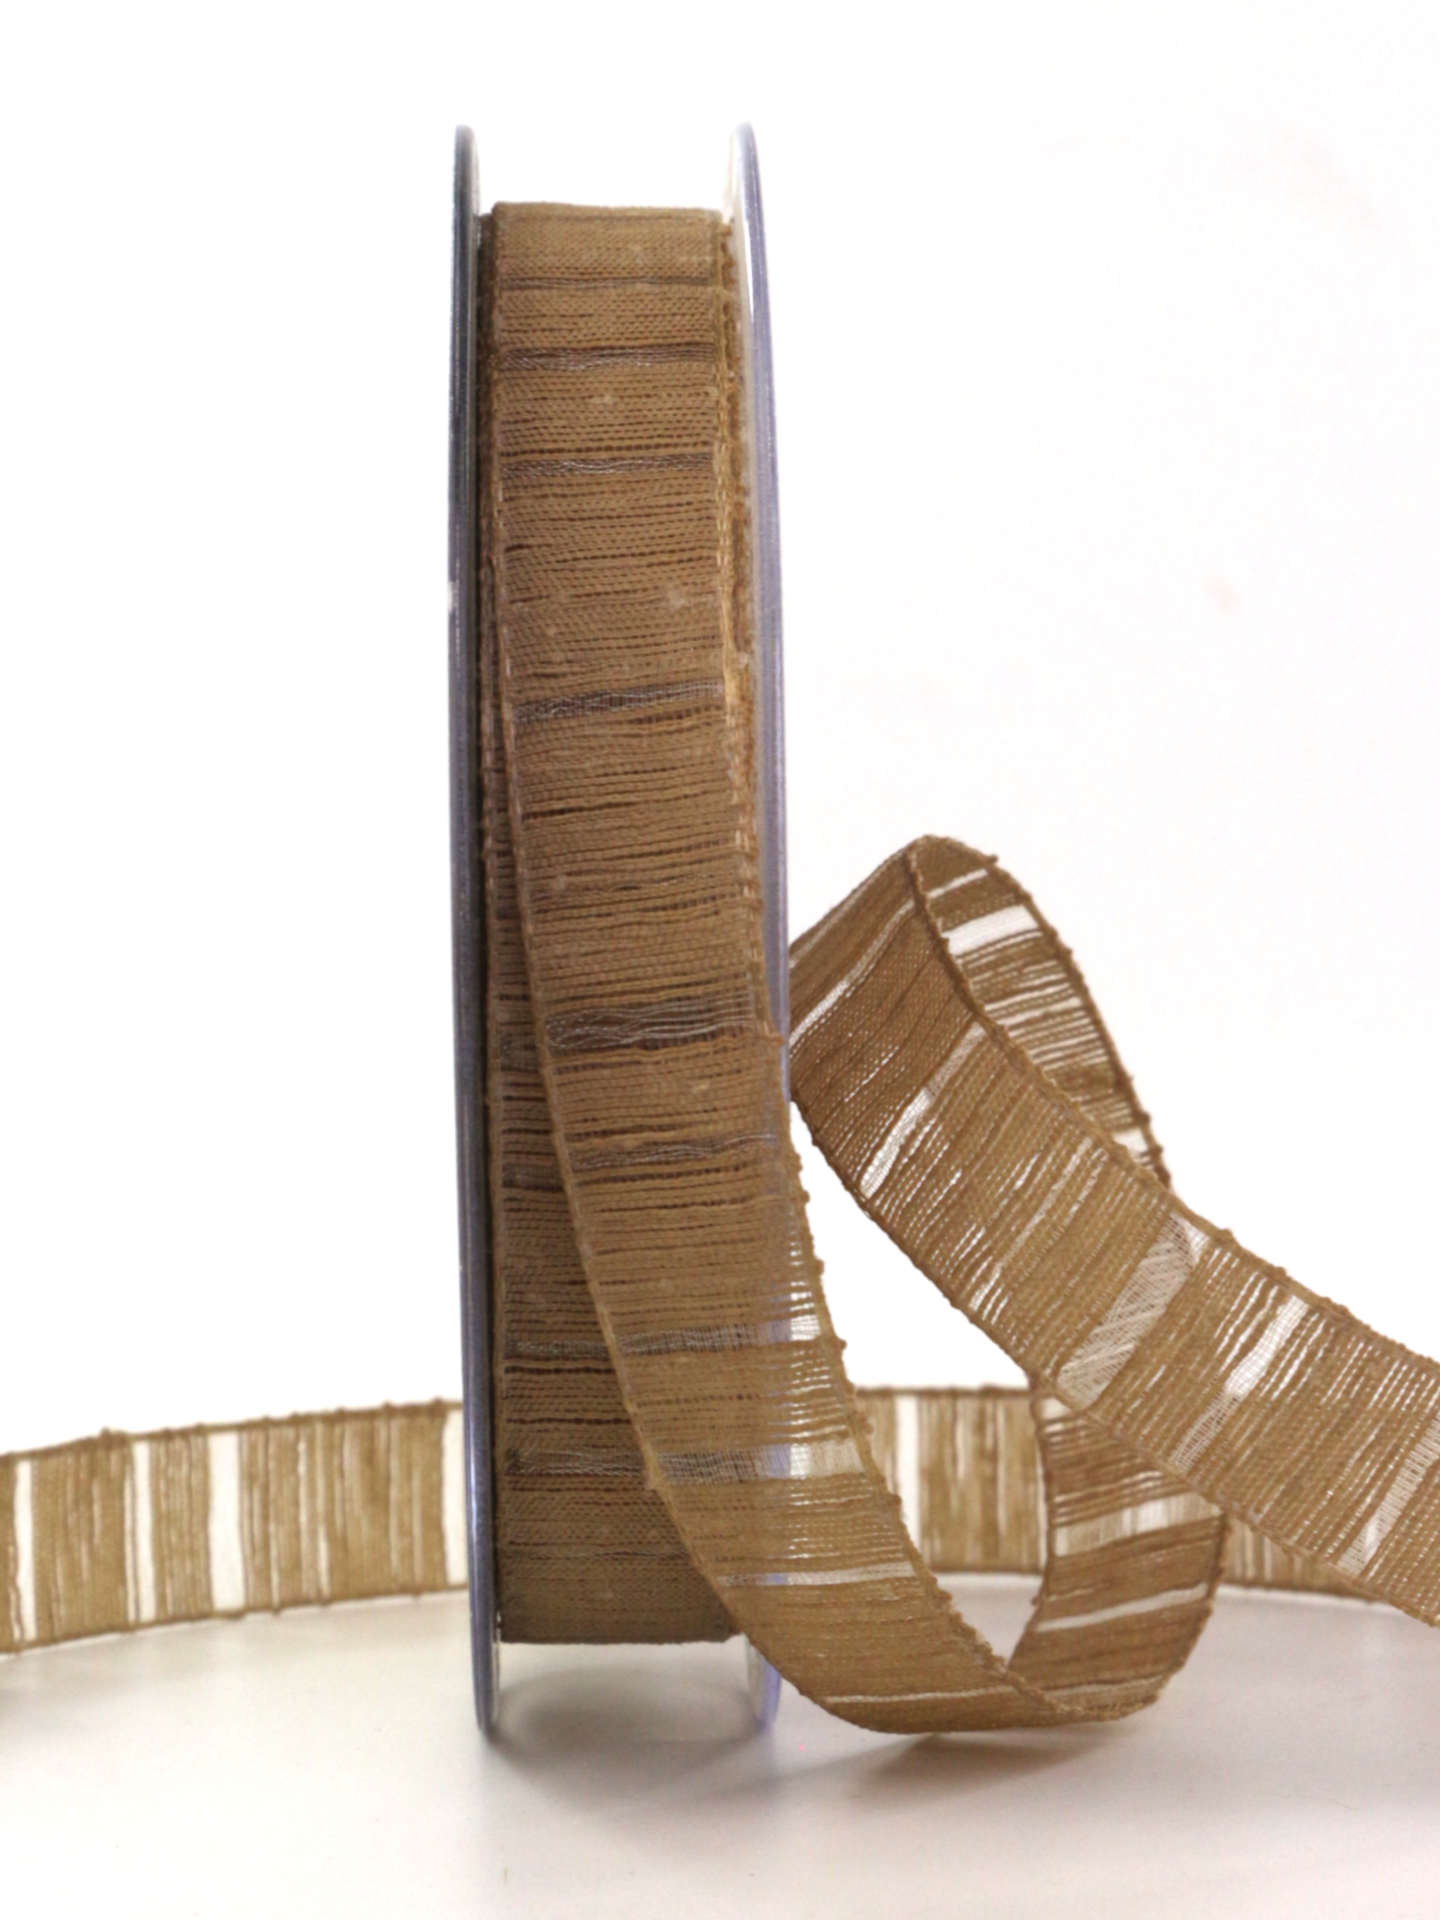 Deko- und Geschenkband mit Streifenmuster, braun, 15 mm breit, 20 m Rolle - geschenkband, geschenkband-einfarbig, dekoband